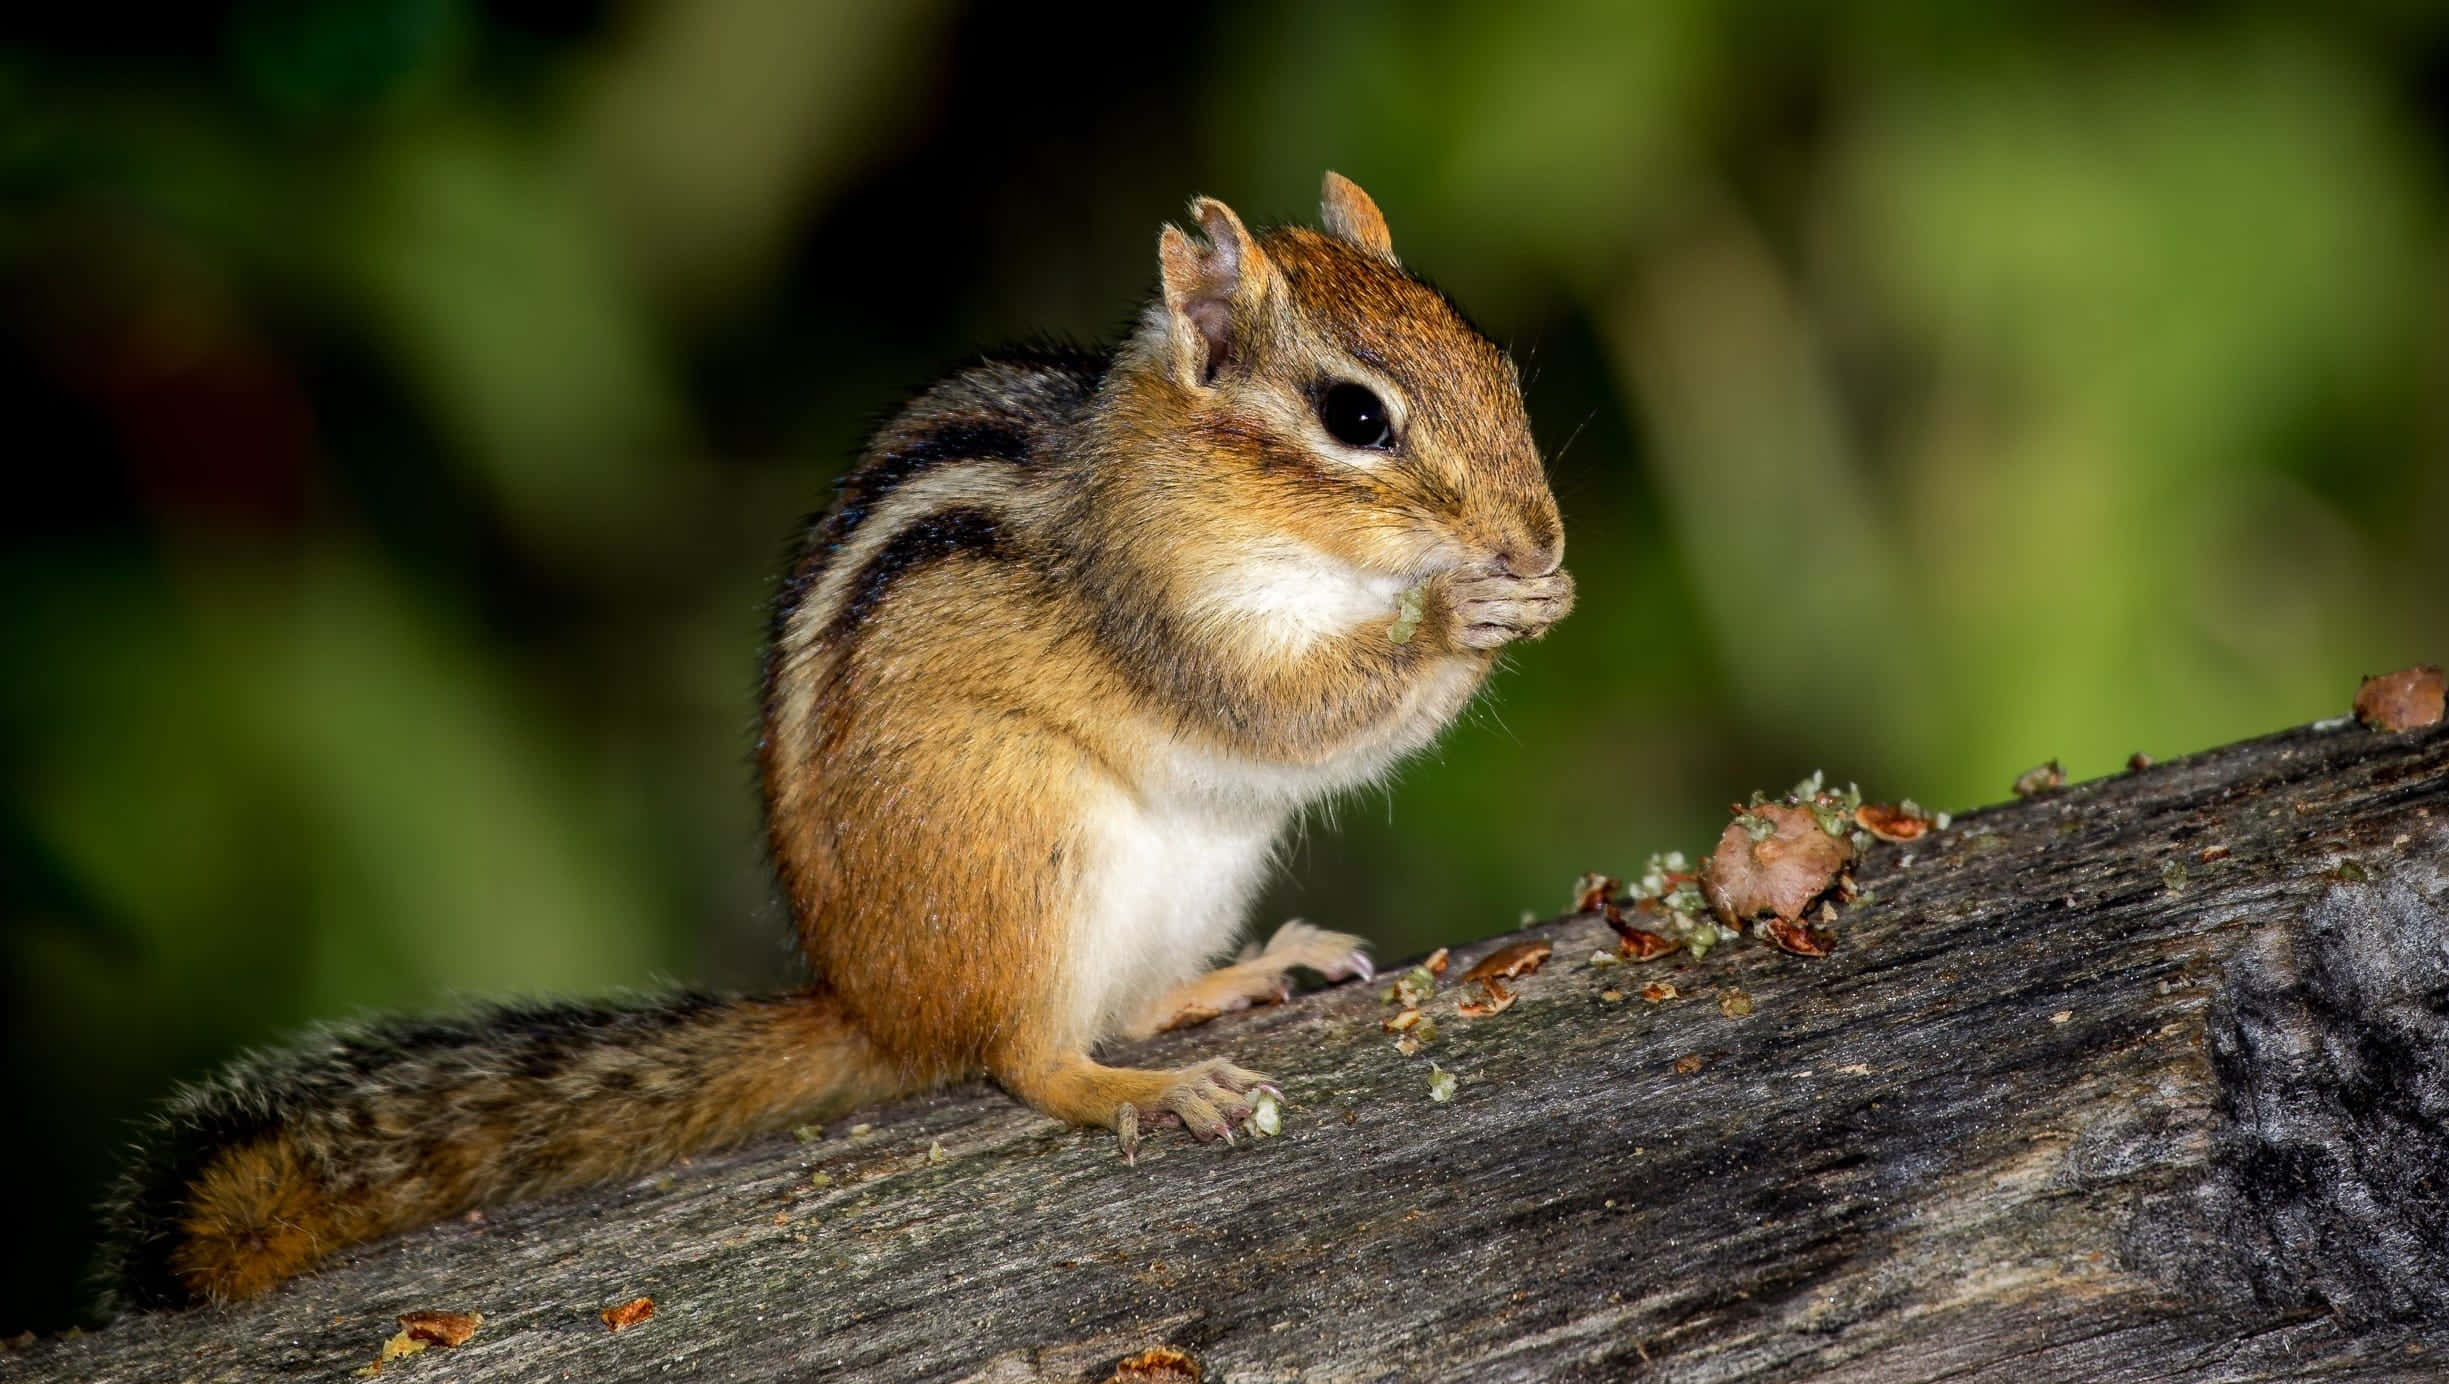 A cute chipmunk enjoying a nut